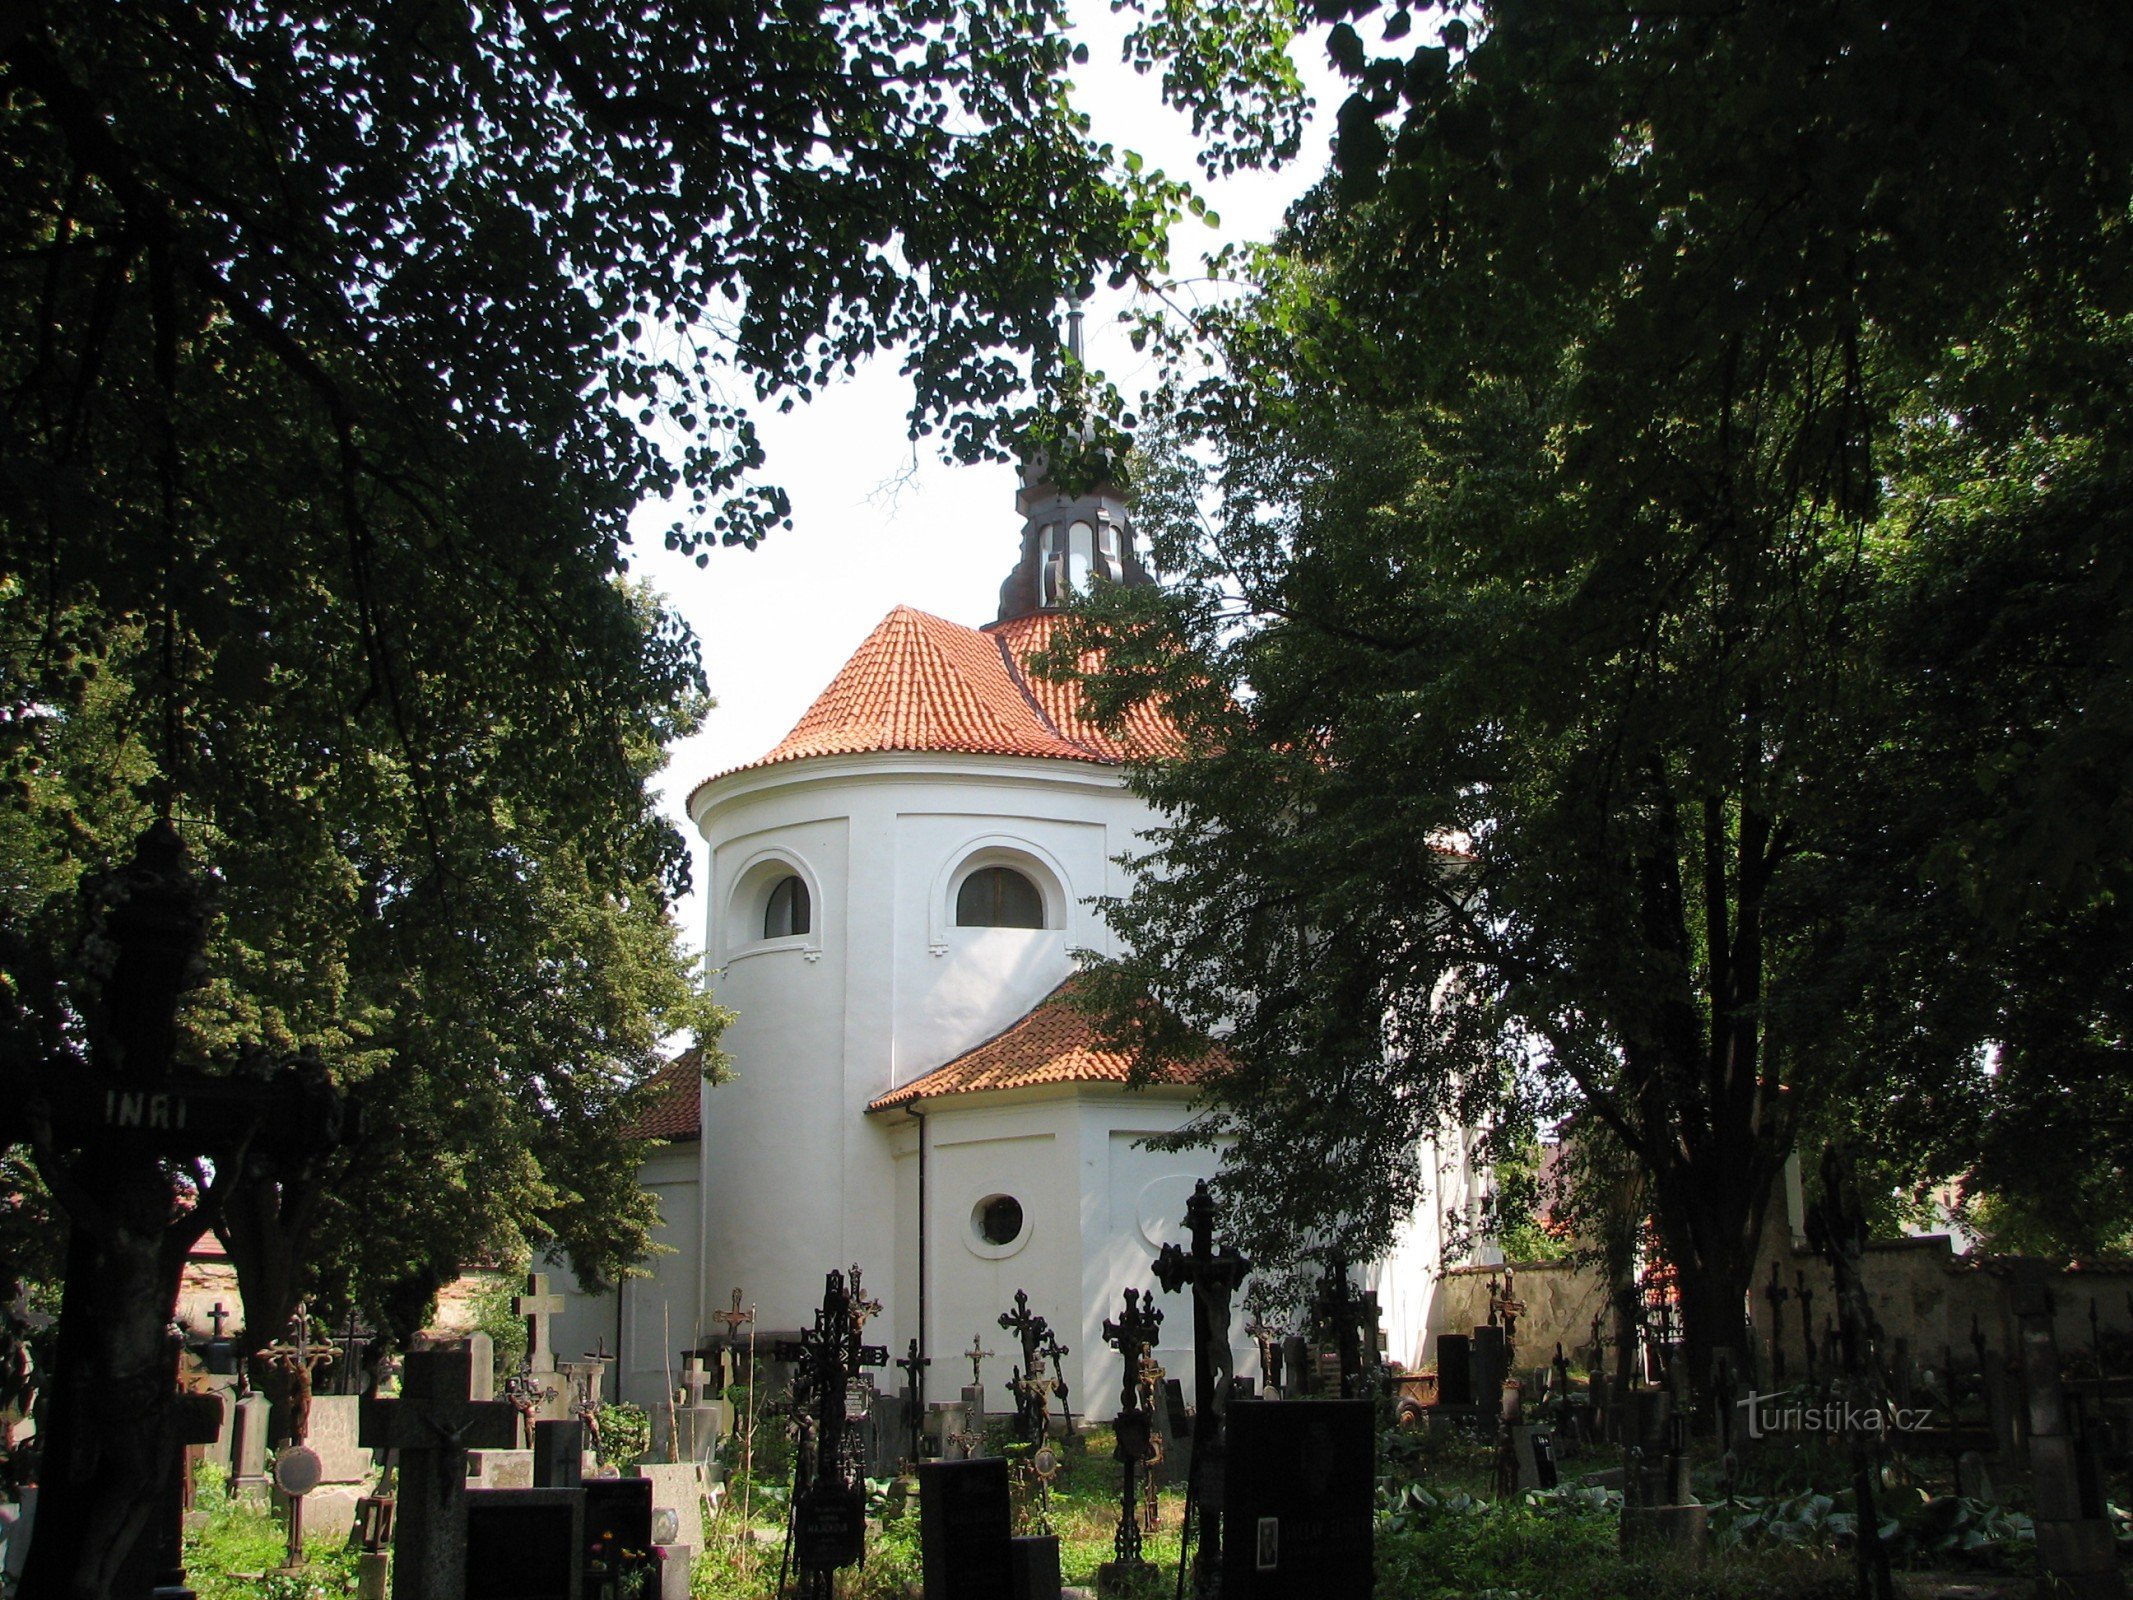 Kostel sv. Michala a starý hřbitov v Bechyni